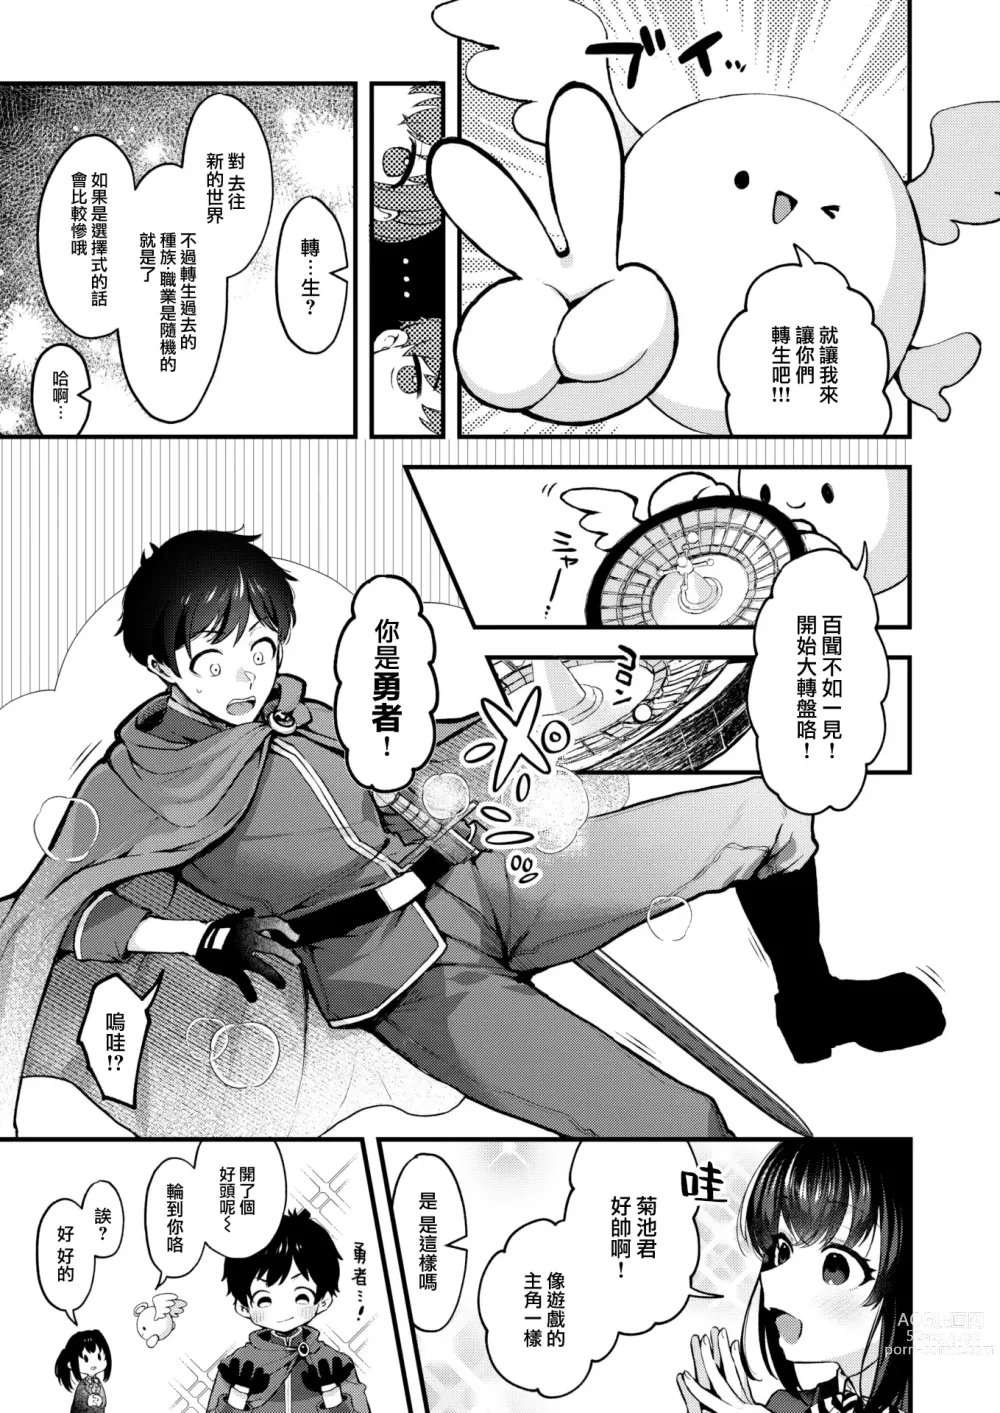 Page 4 of manga Changing!